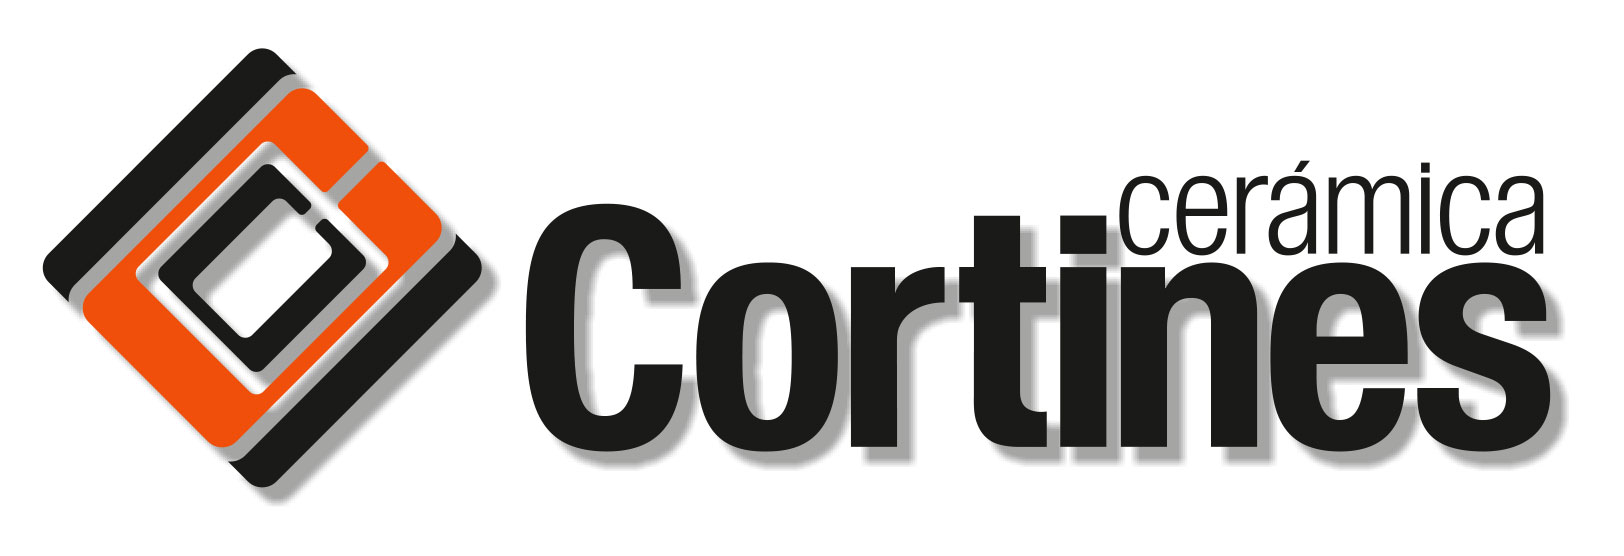 Cortines